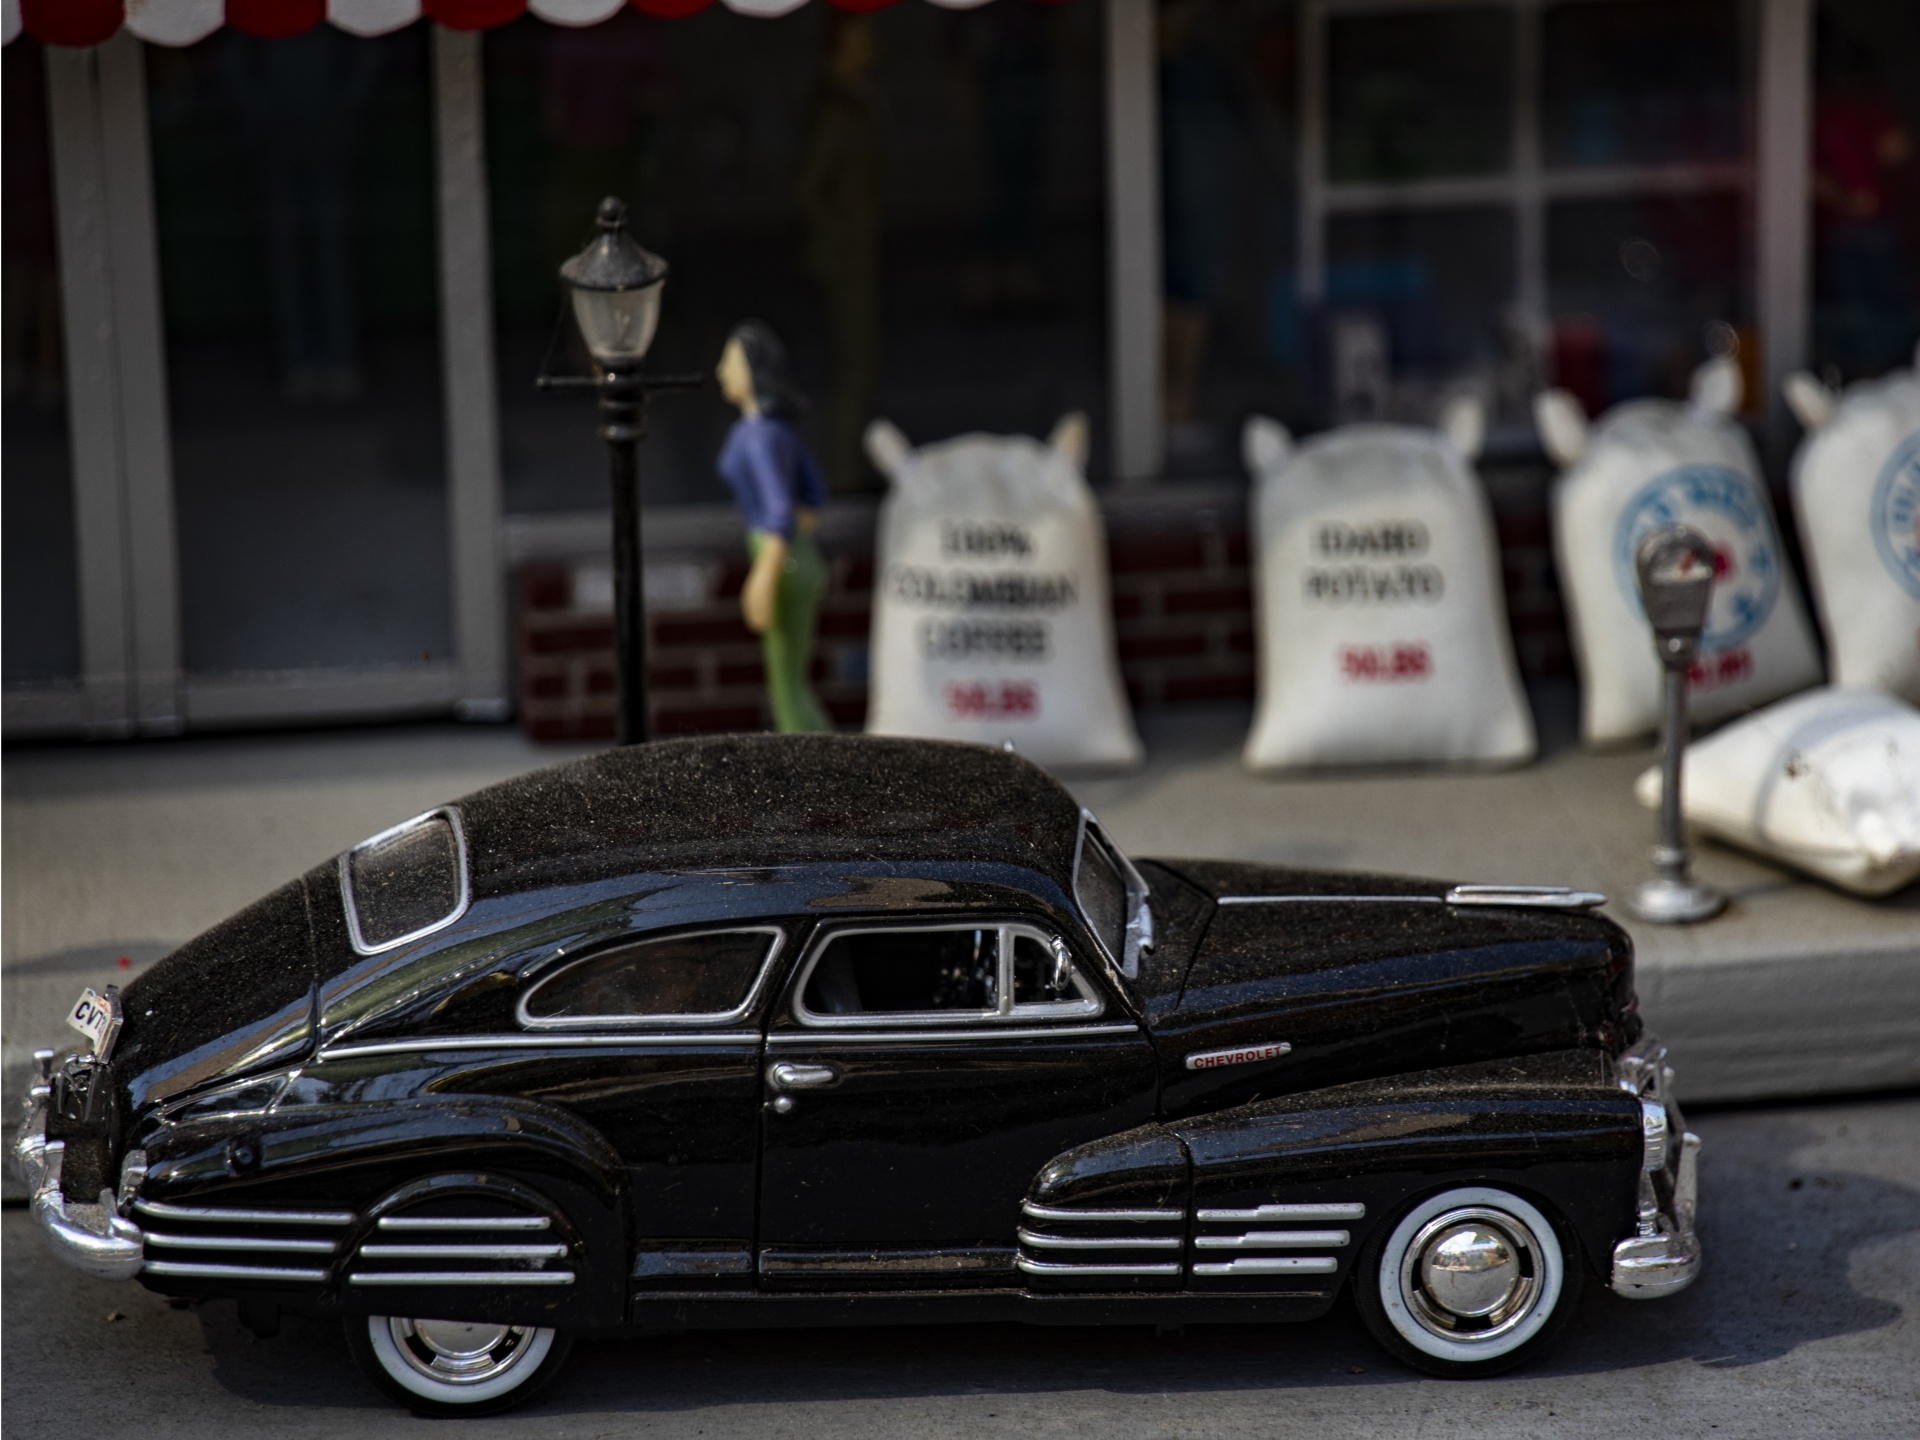 Vintage Black car and storefront